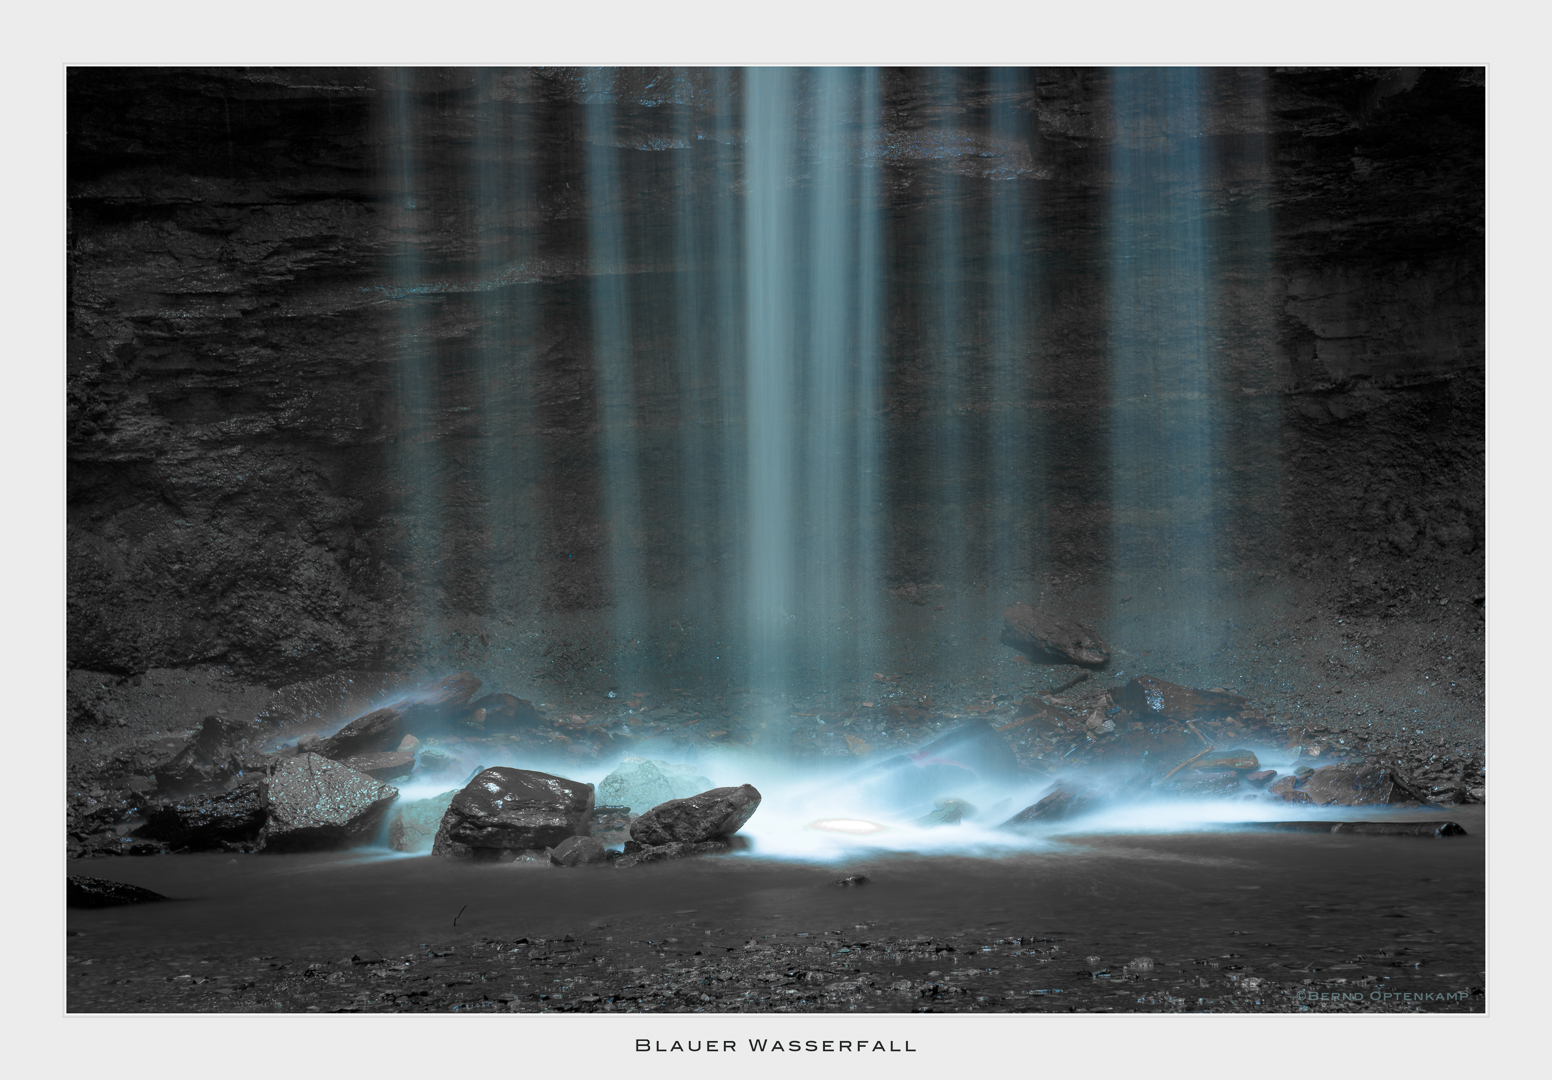 Blauer Wasserfall